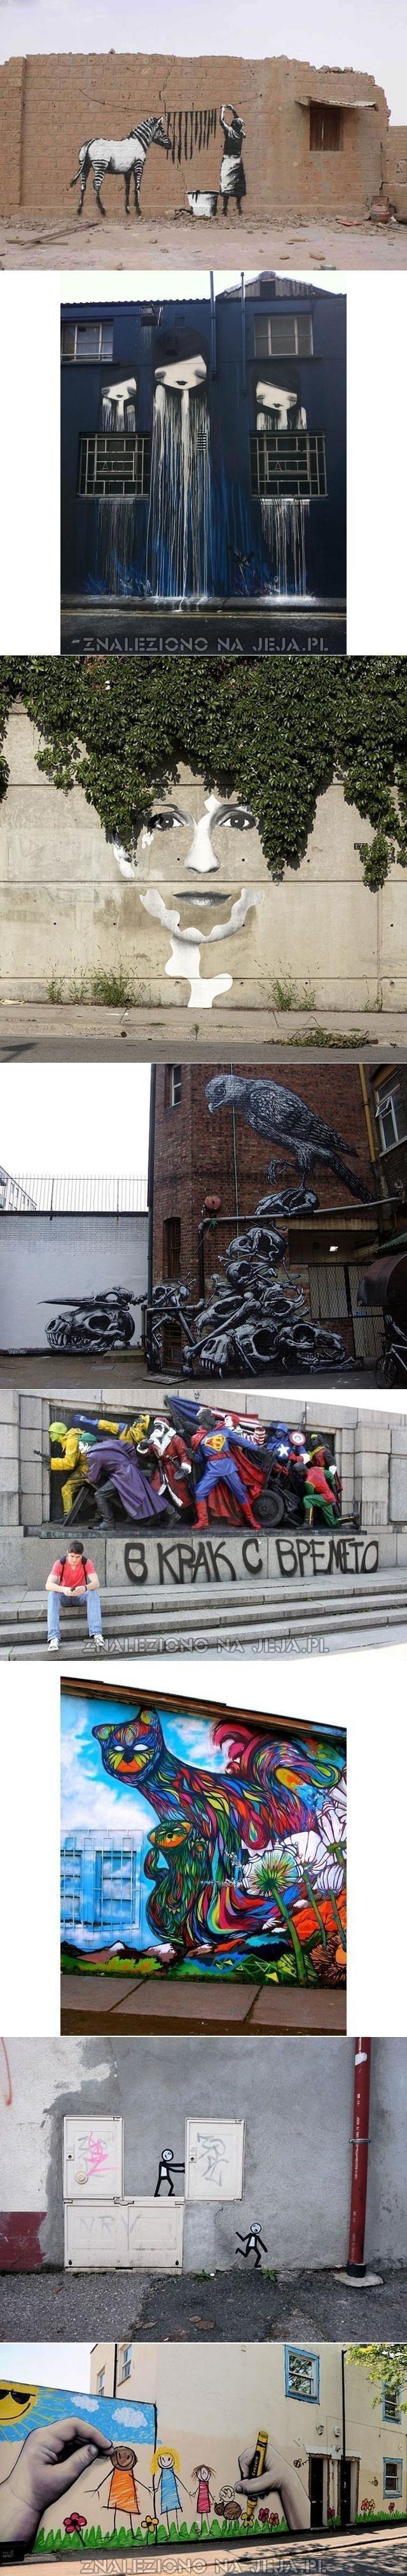 Artystyczne graffiti na ścianie